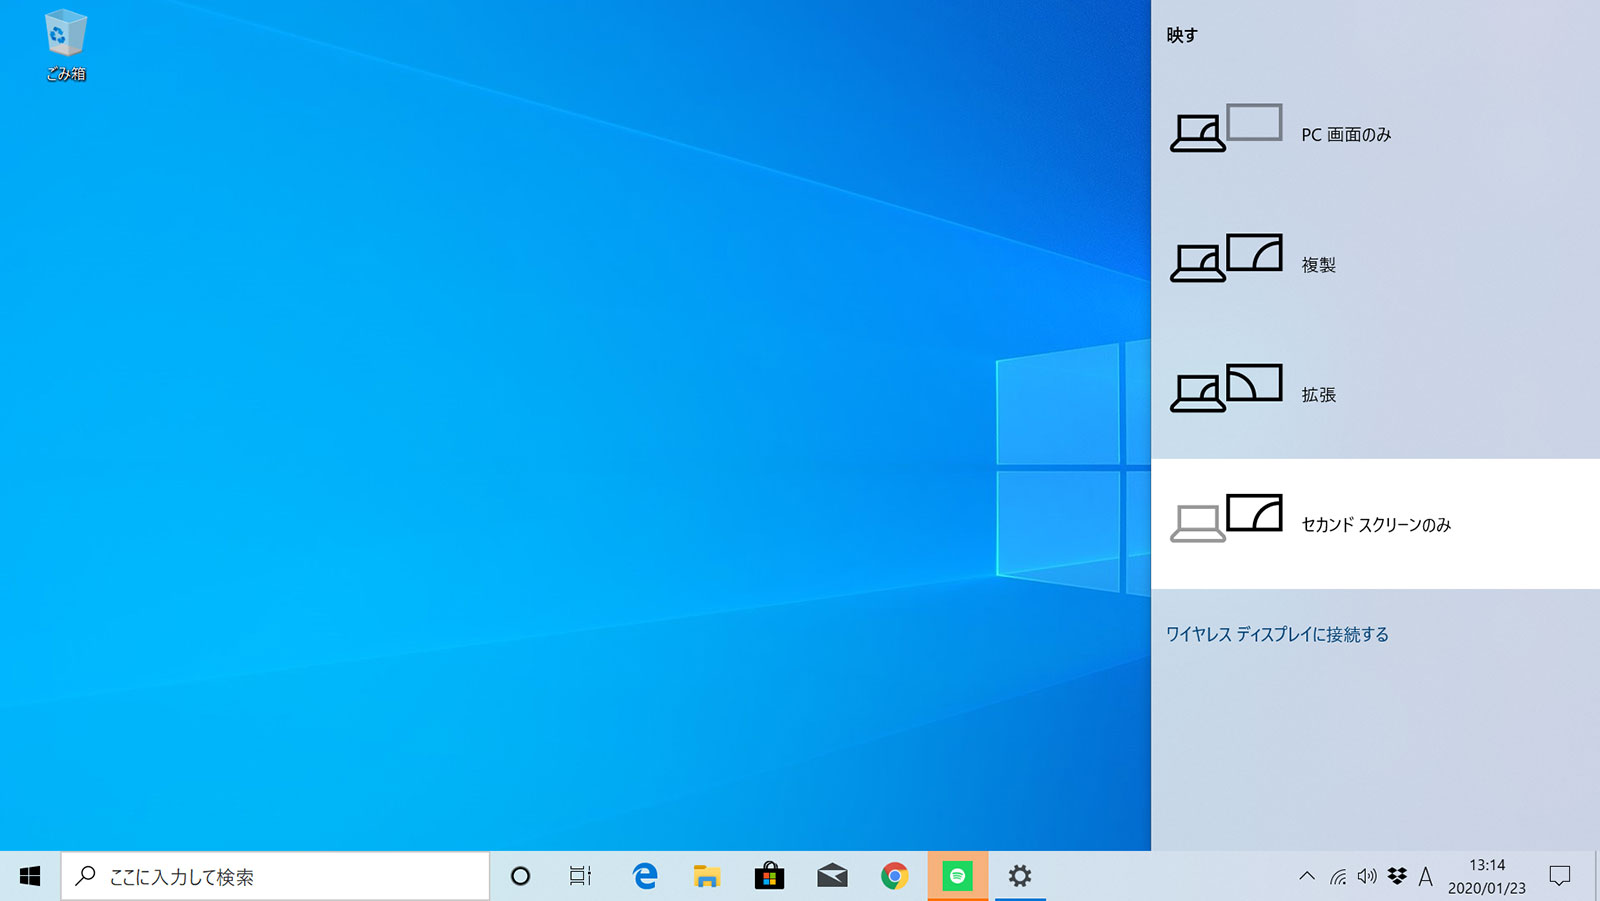 Windows 10基本操作 プロジェクター表示 マルチスクリーン Pcまなぶ